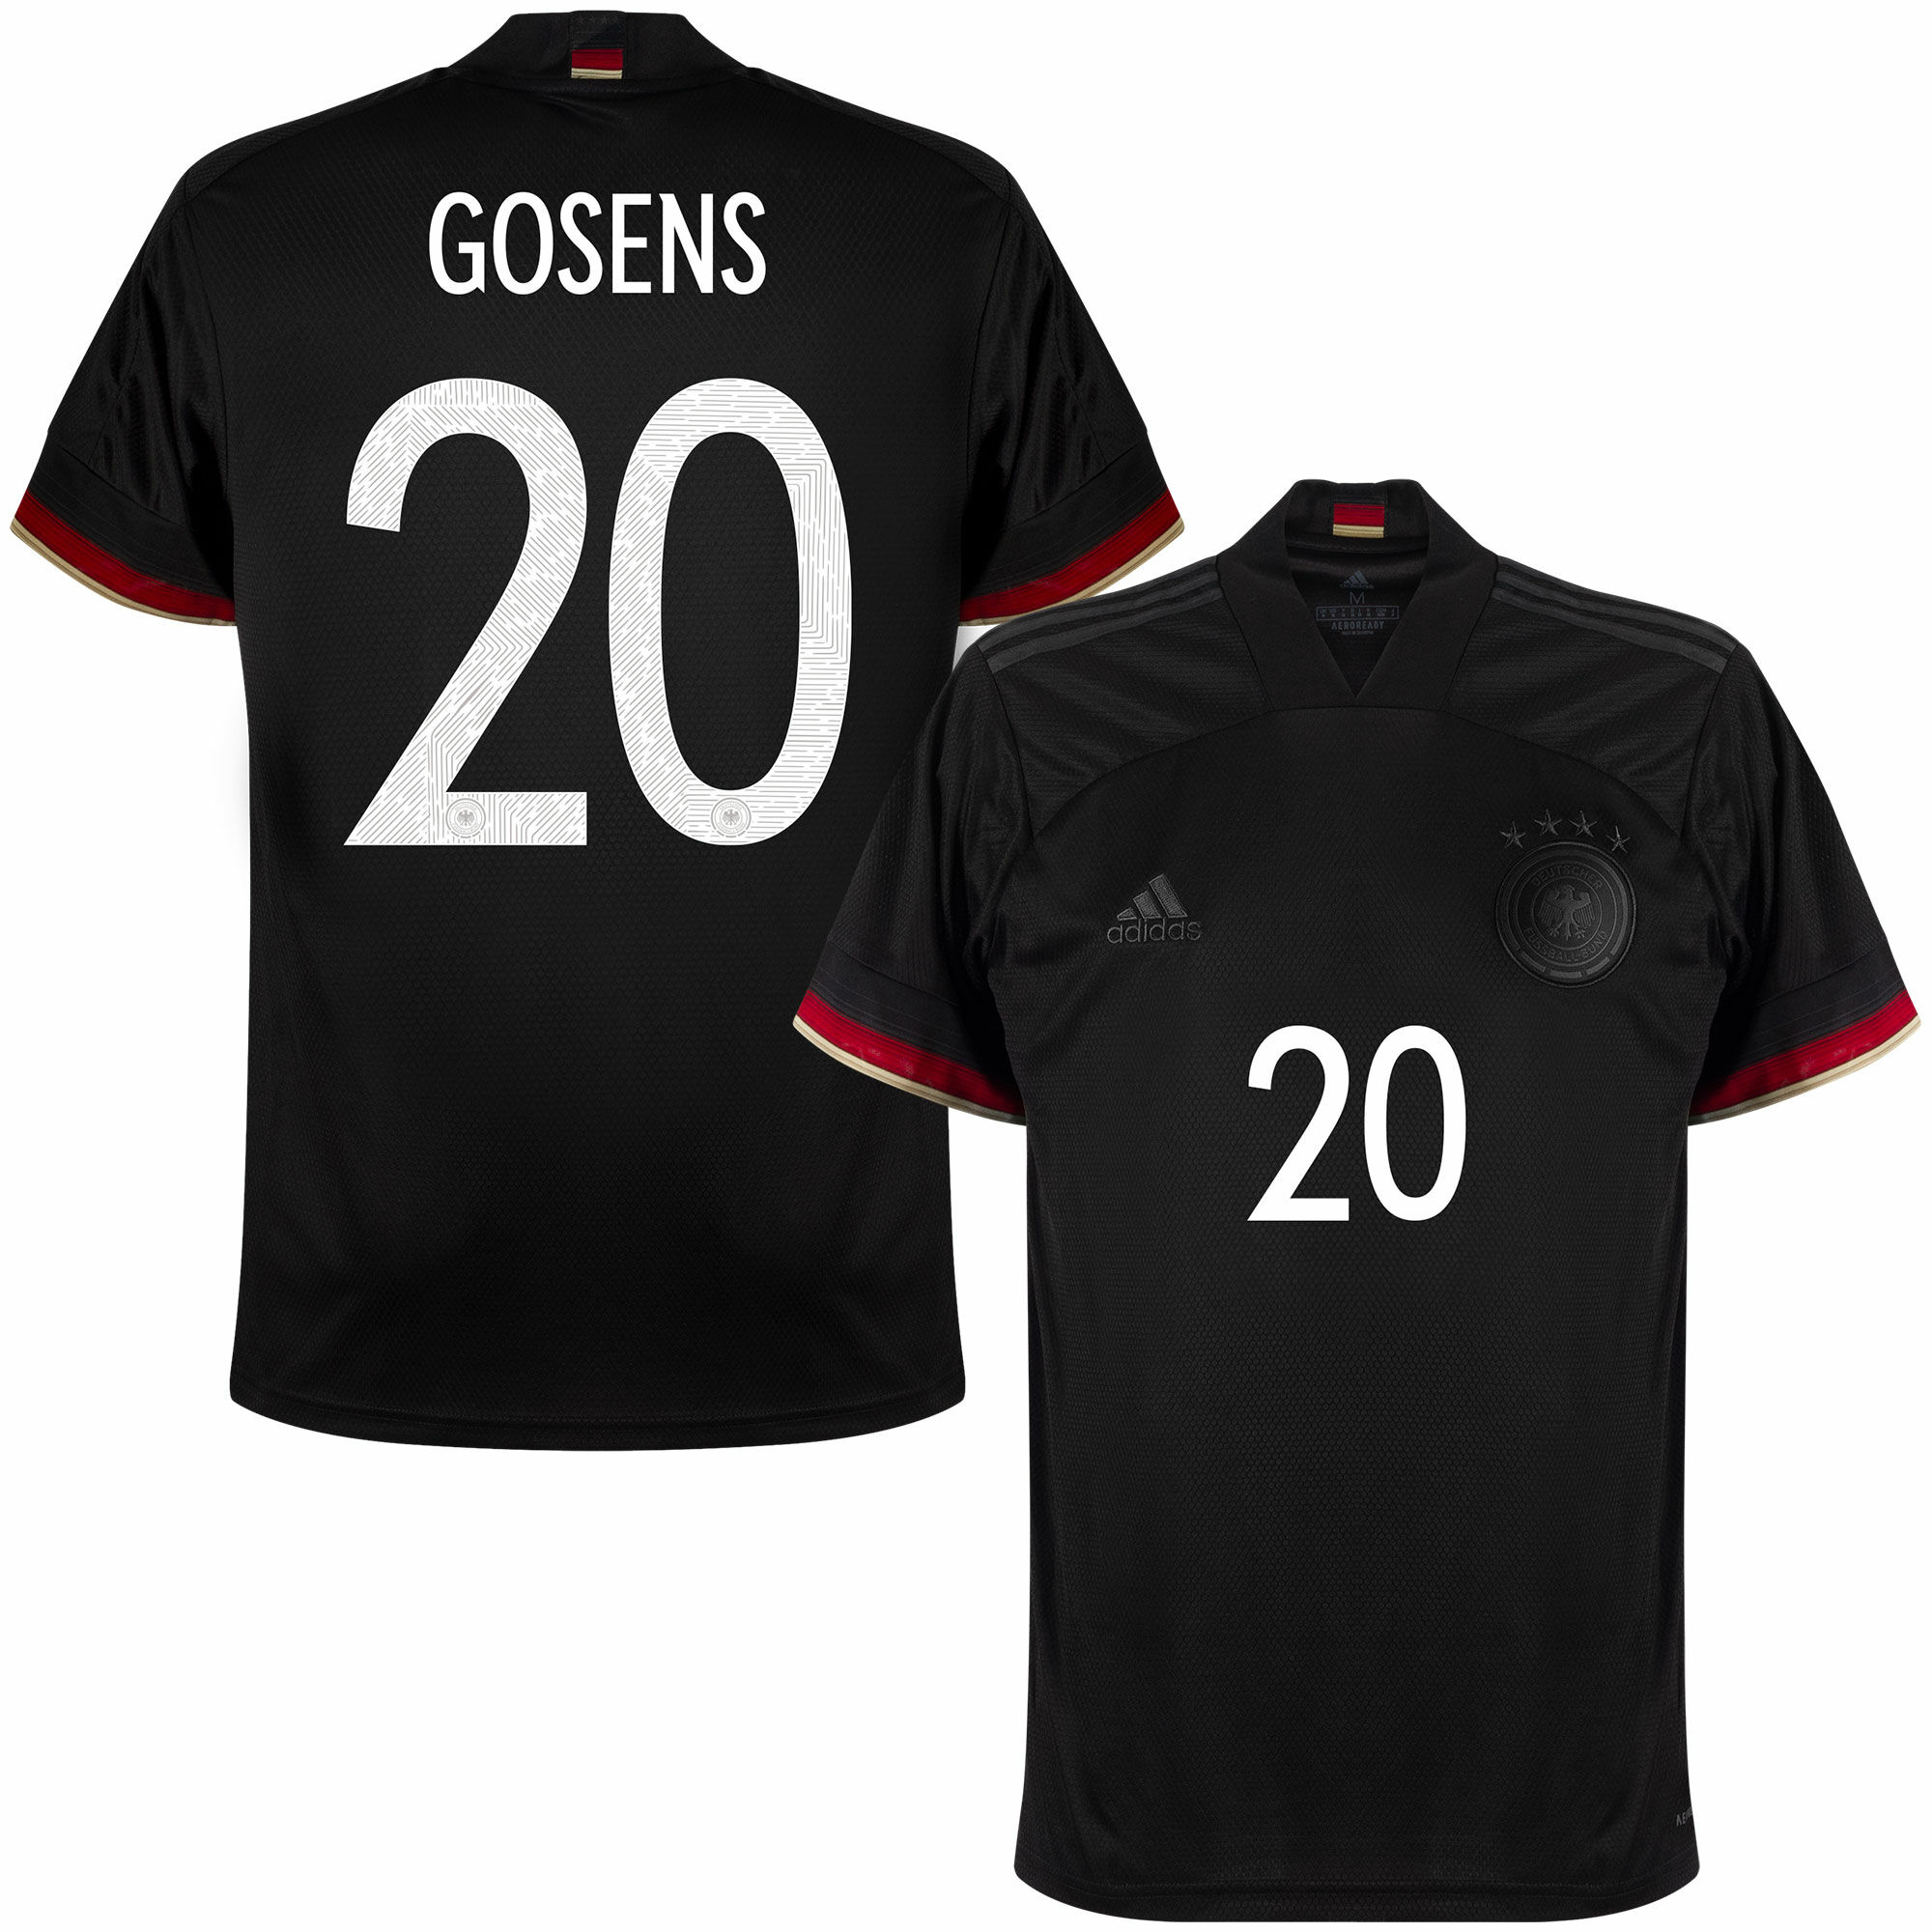 Německo - Dres fotbalový - oficiální potisk, černý, sezóna 2020/21, Robin Gosens, číslo 20, venkovní